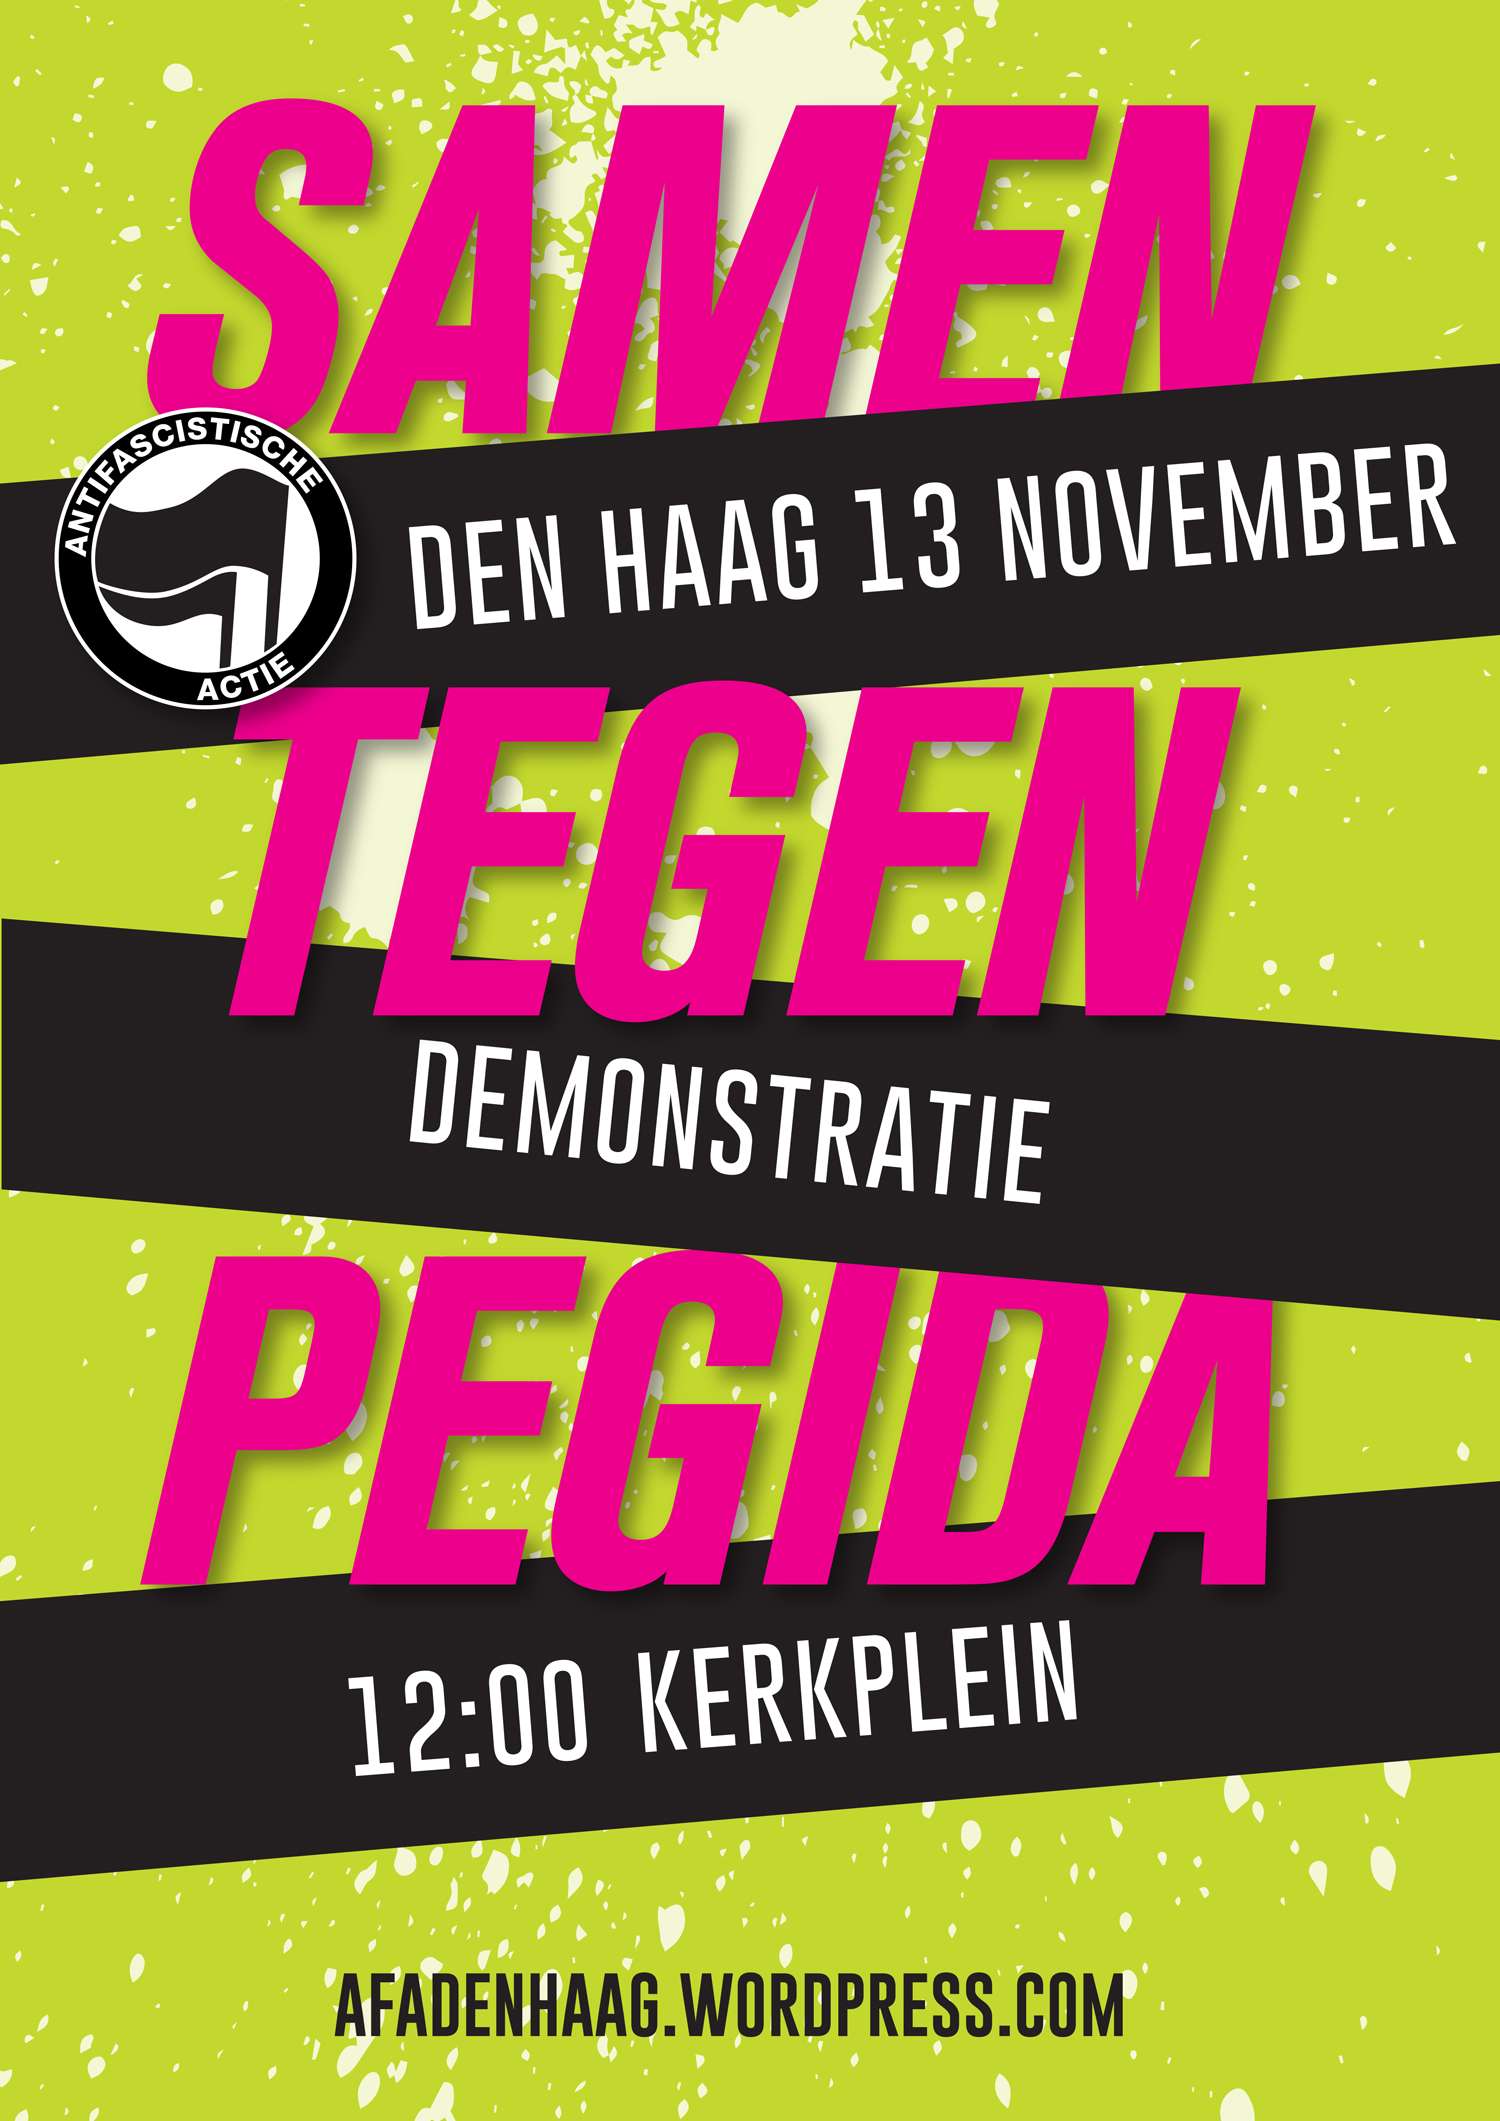 Kerkplein, Den Haag: Demonstratie: Geen ruimte voor Pegida! Stop racisme! [13-11-2016]